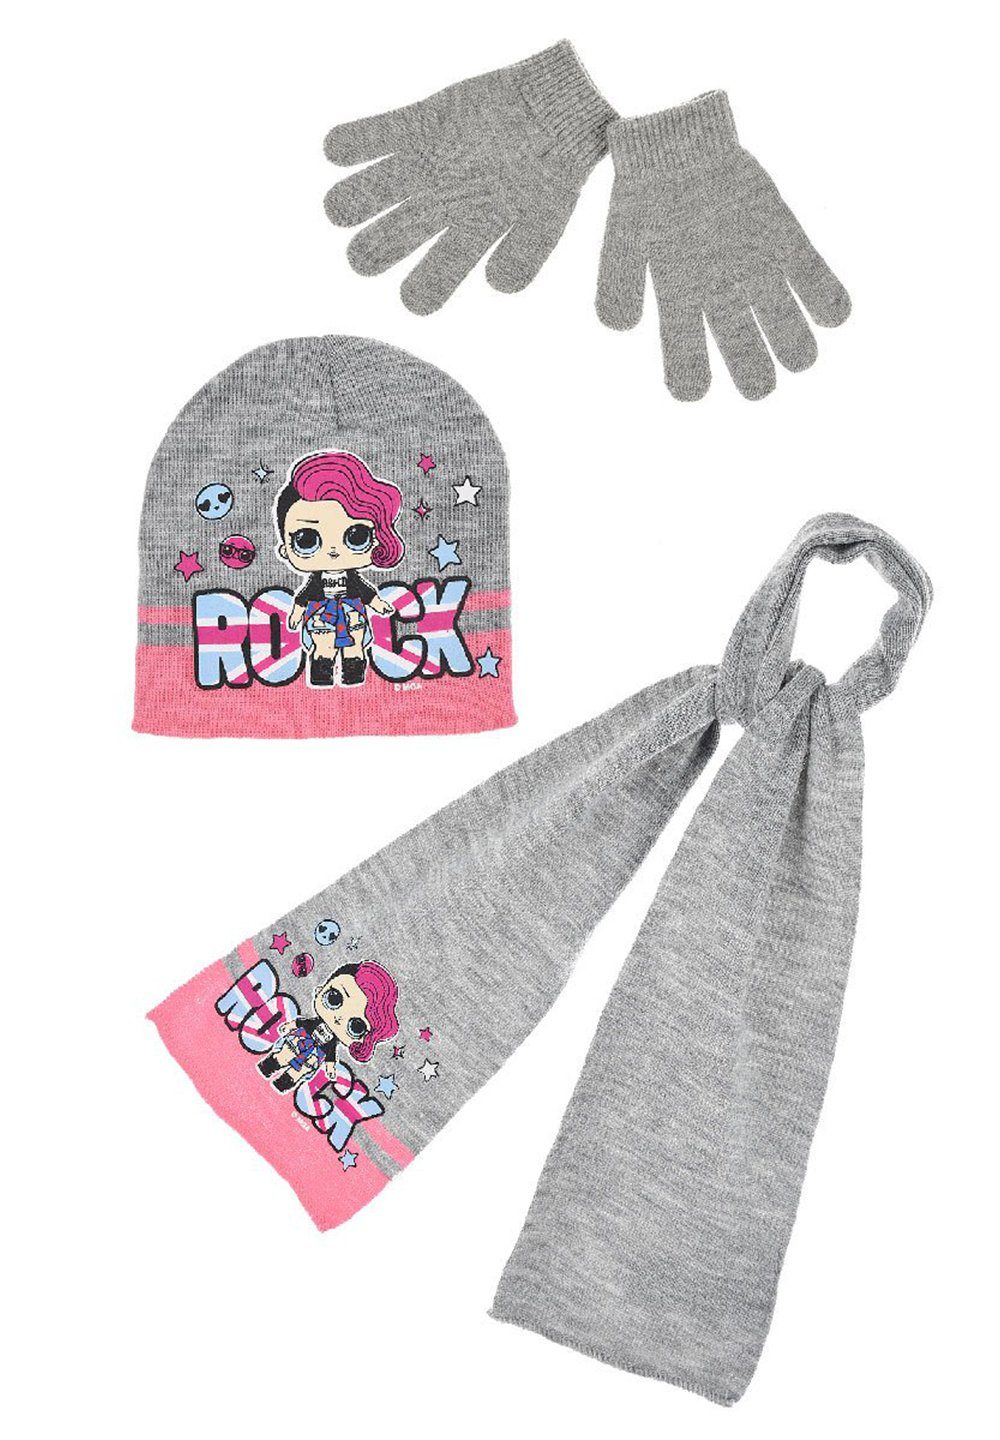 L.O.L. SURPRISE! Beanie Kinder Mädchen Winter-Set Mütze, Schal und Handschuhe 3-tlg. (SET)